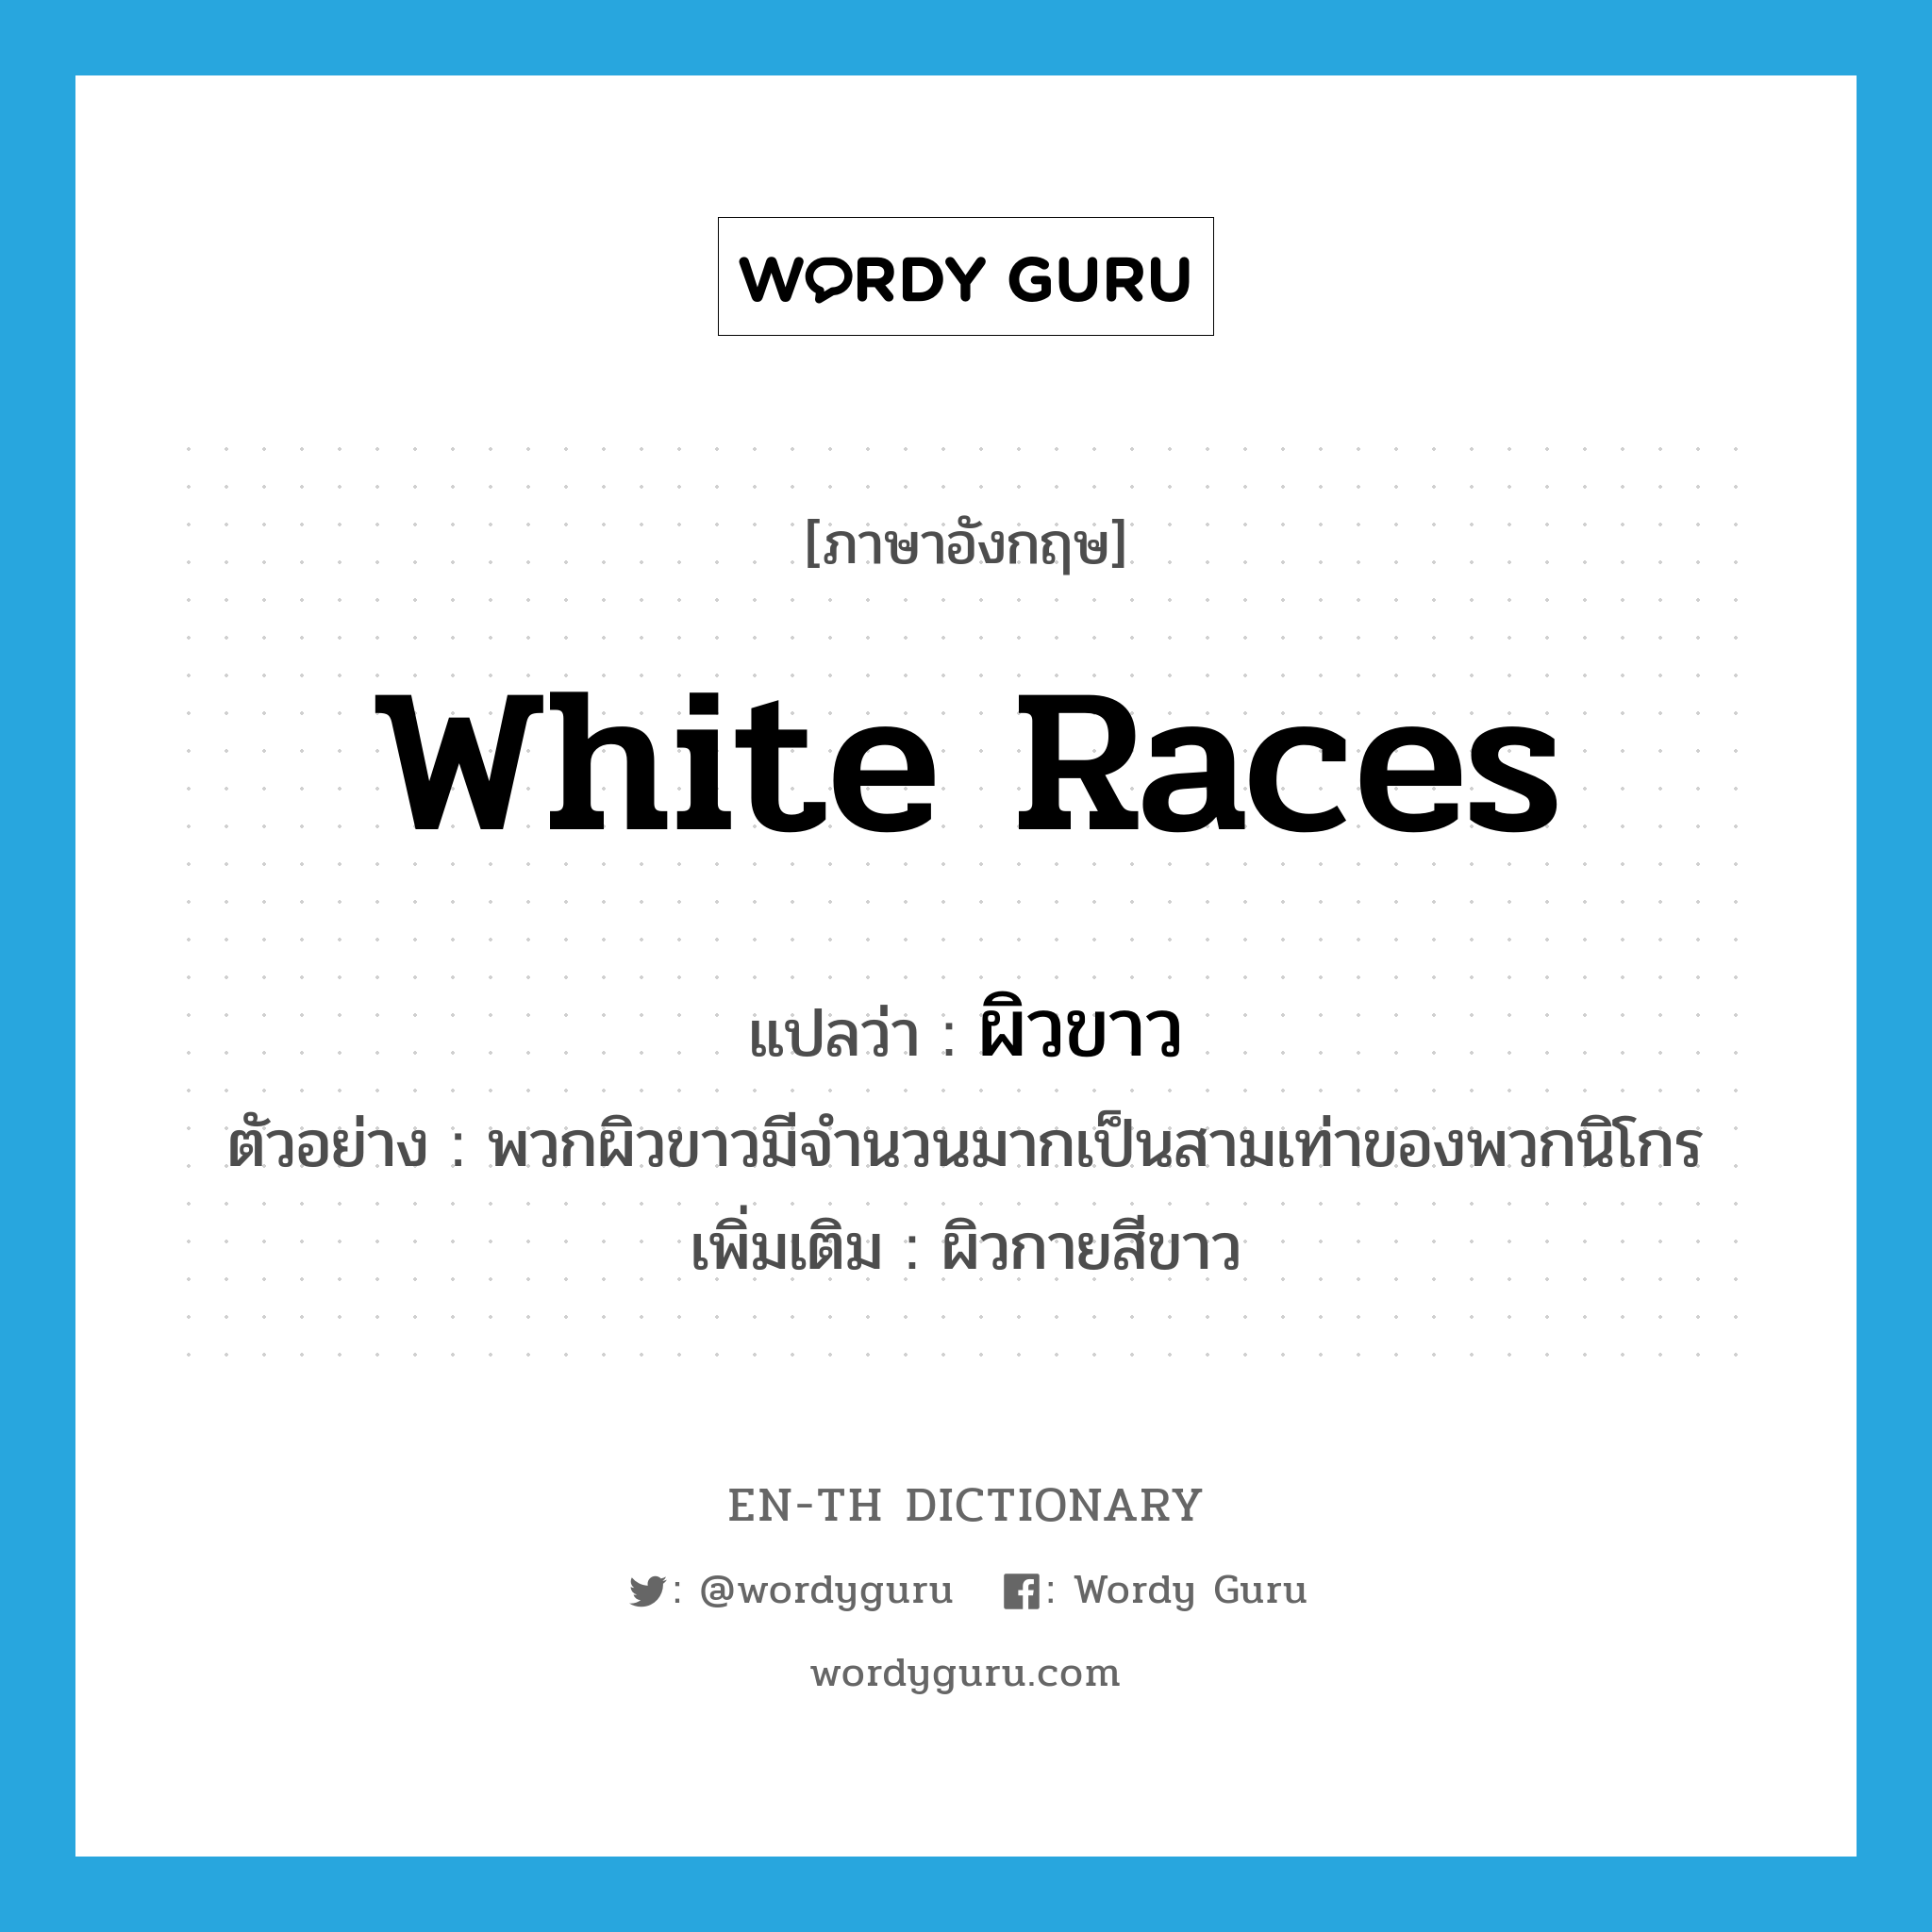 white races แปลว่า?, คำศัพท์ภาษาอังกฤษ white races แปลว่า ผิวขาว ประเภท N ตัวอย่าง พวกผิวขาวมีจำนวนมากเป็นสามเท่าของพวกนิโกร เพิ่มเติม ผิวกายสีขาว หมวด N